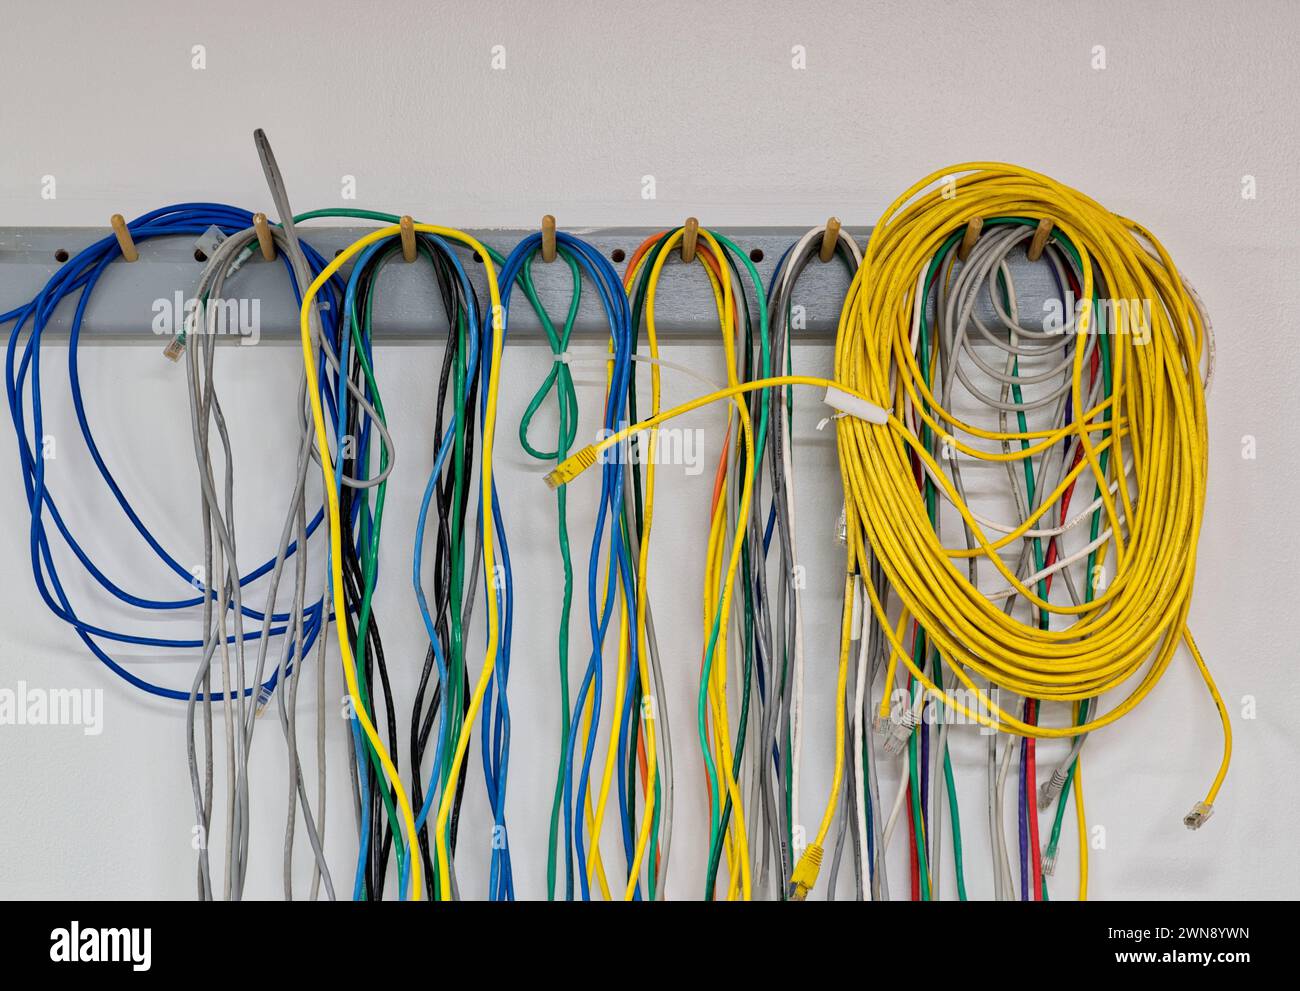 Bunte alte elektrische Kabel hängen an einer Wand. CAT5 Twisted-Pair-Kabel für Computernetzwerke. Stockfoto